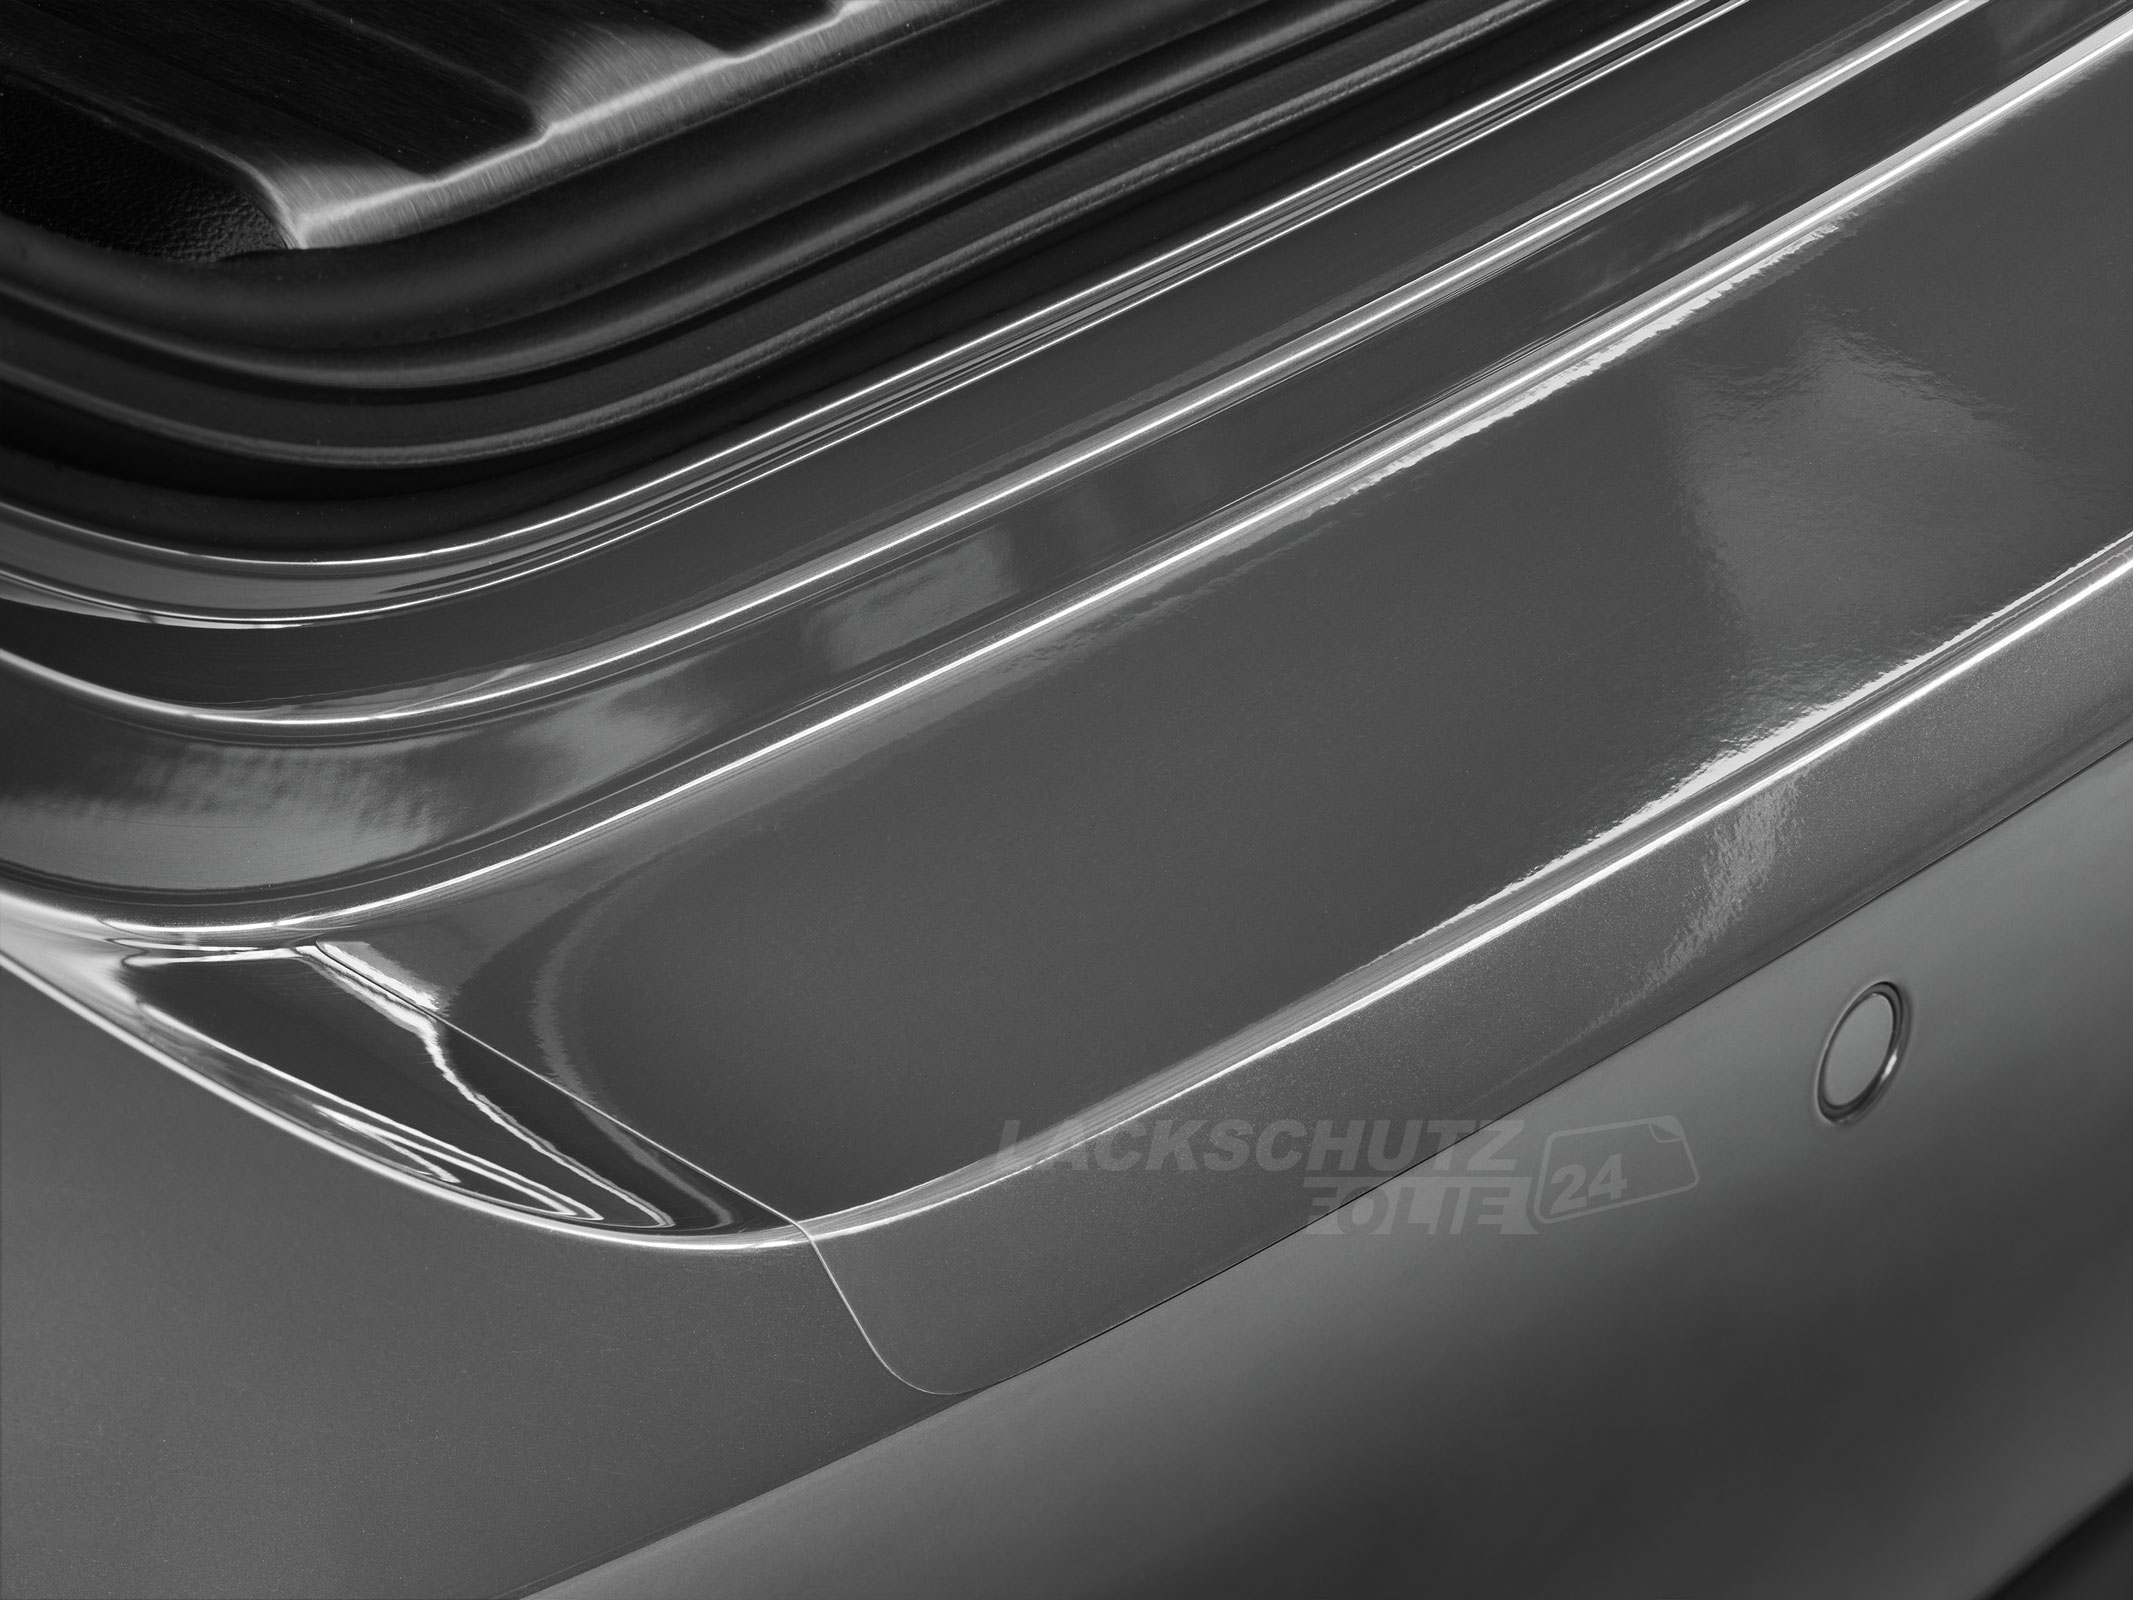 Ladekantenschutzfolie - Transparent Glatt Hochglänzend 150 µm stark für Subaru Forester (V) Typ S5, BJ 03/2018